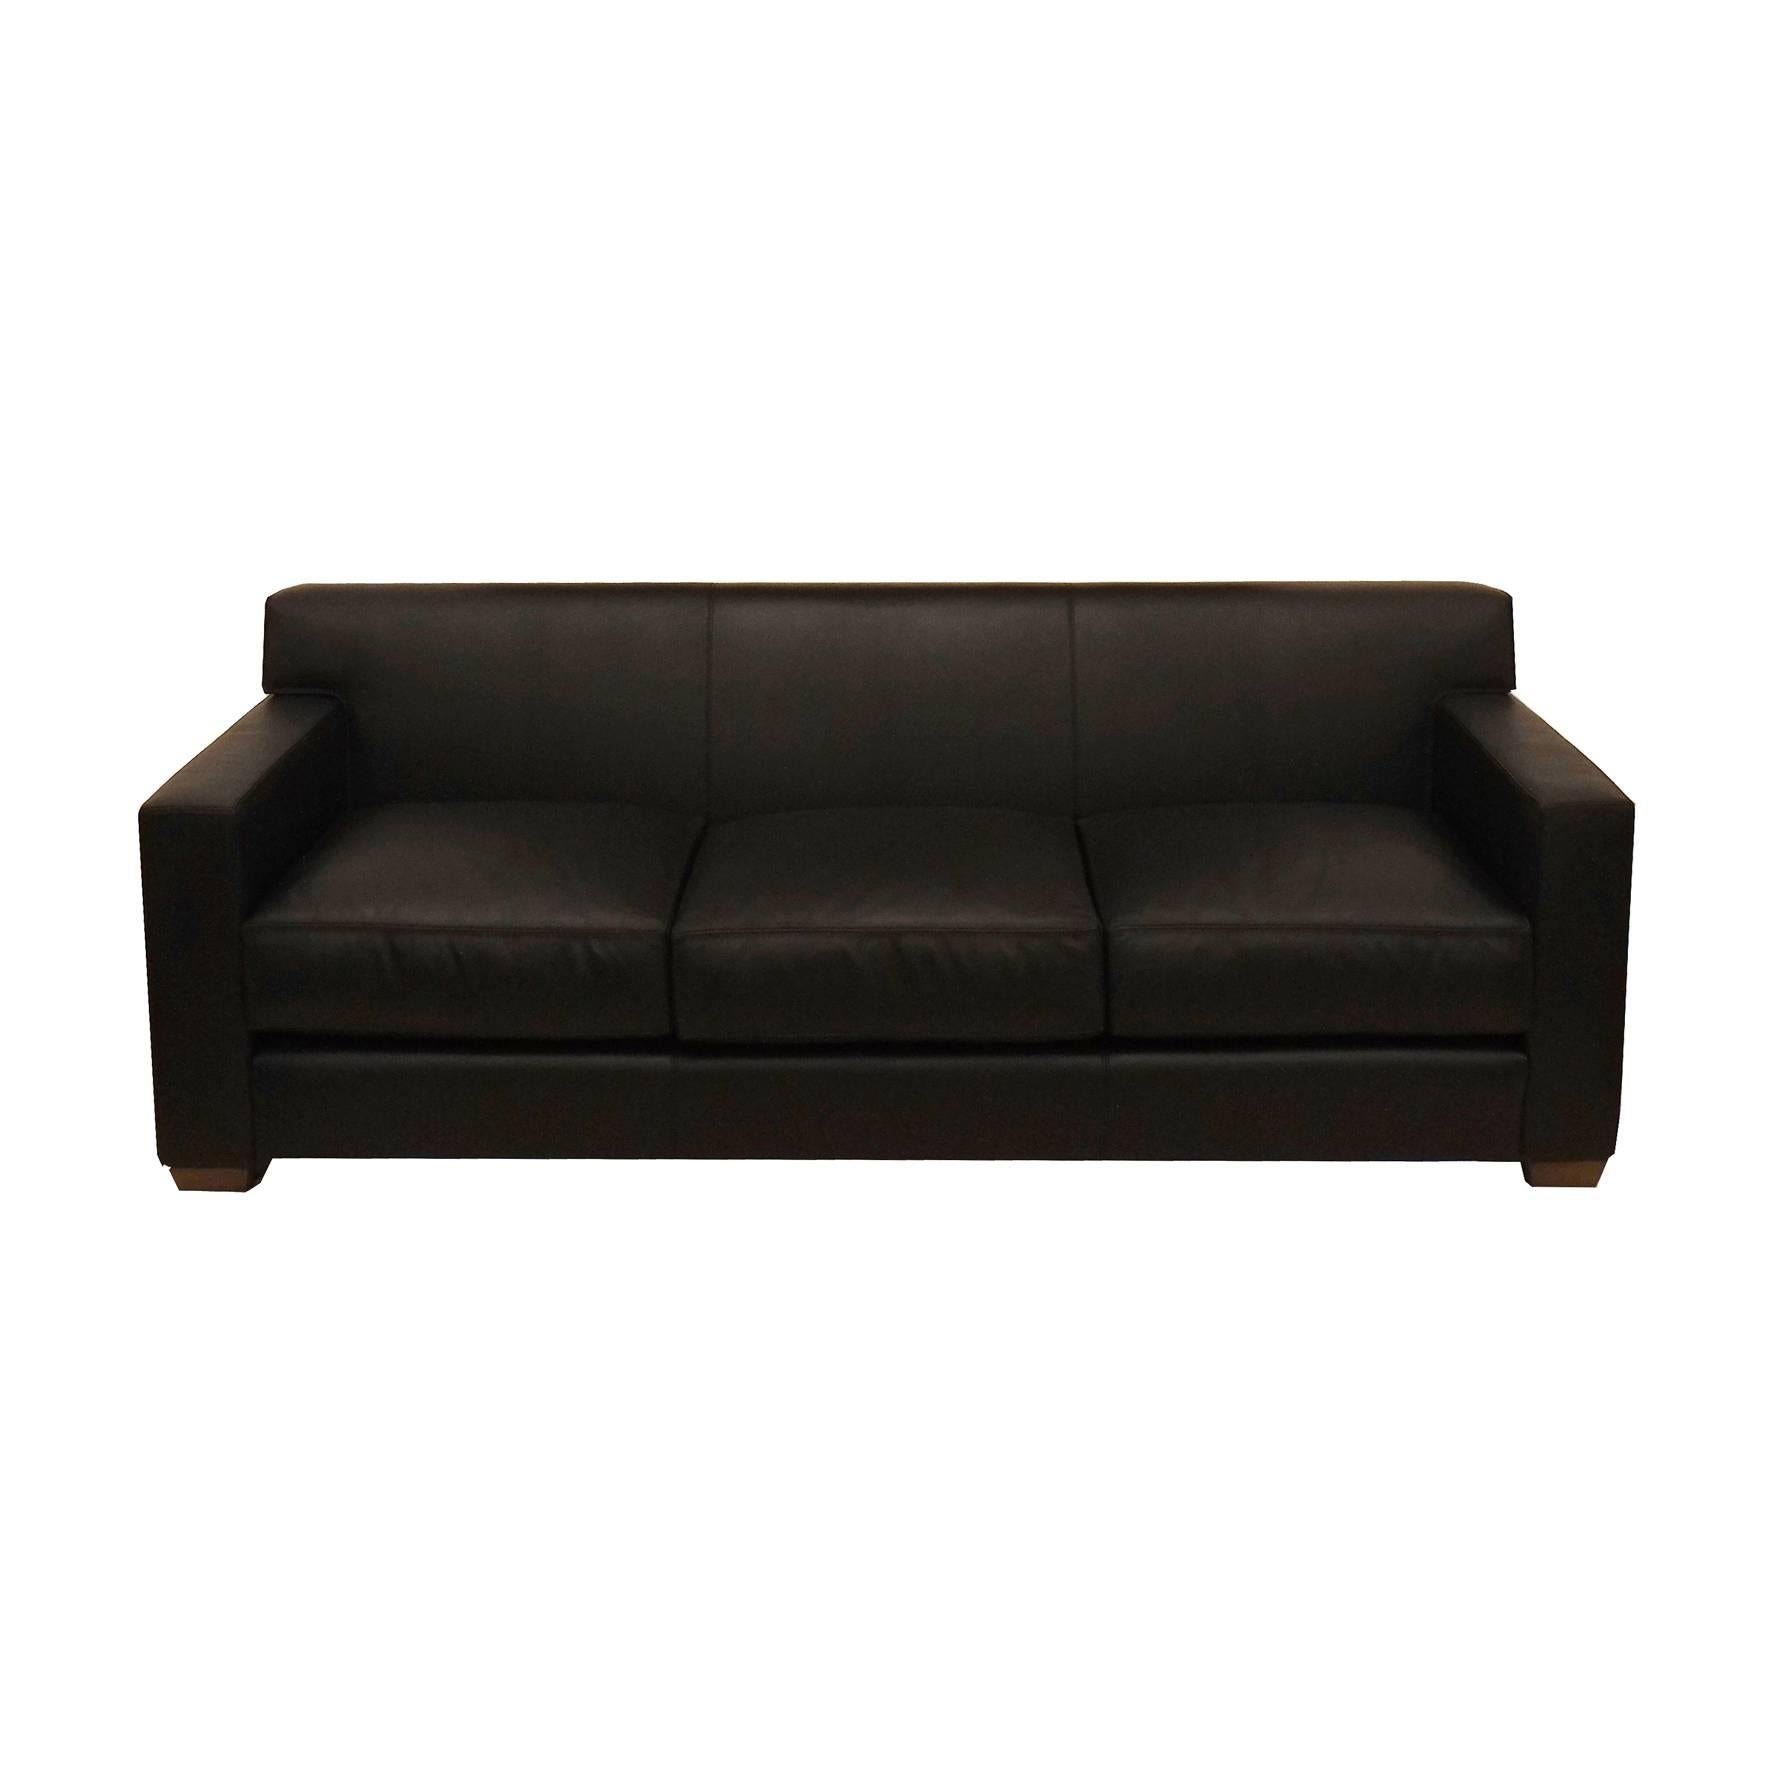 Art Deco Jean-Michel Frank & Hermès, a Black Leather Sofa, 21st Century For Sale